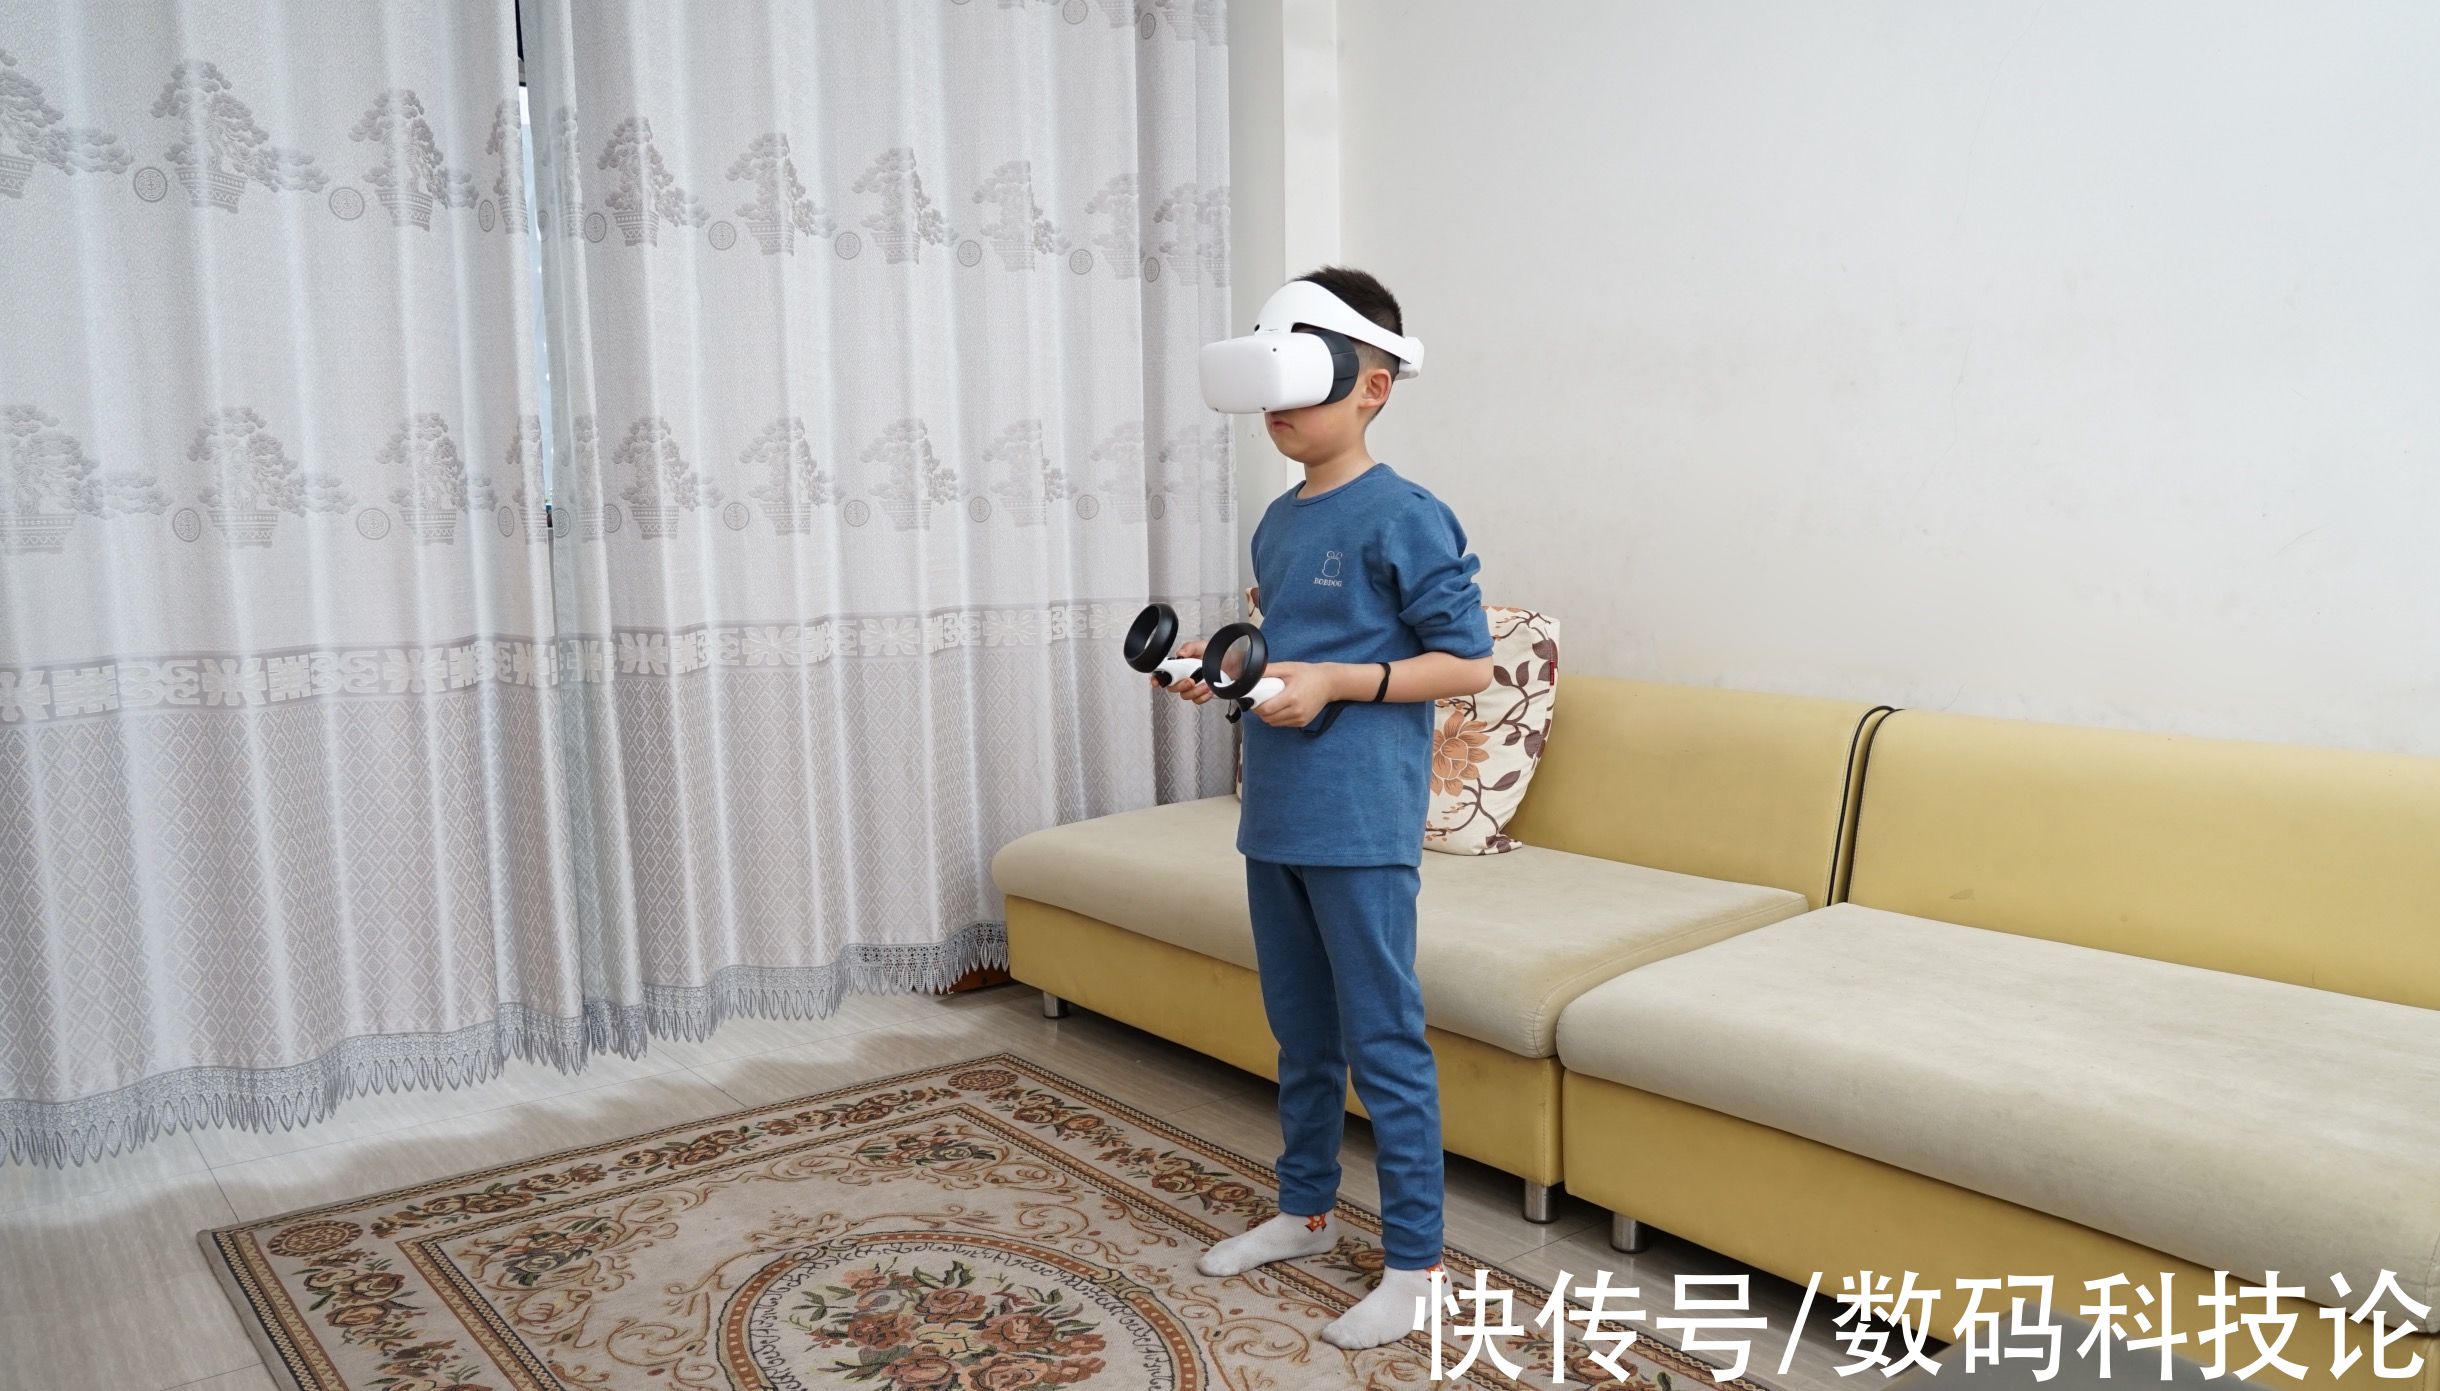 一体机|给孩子过年的礼物：爱奇艺奇遇Dream全体感VR一体机